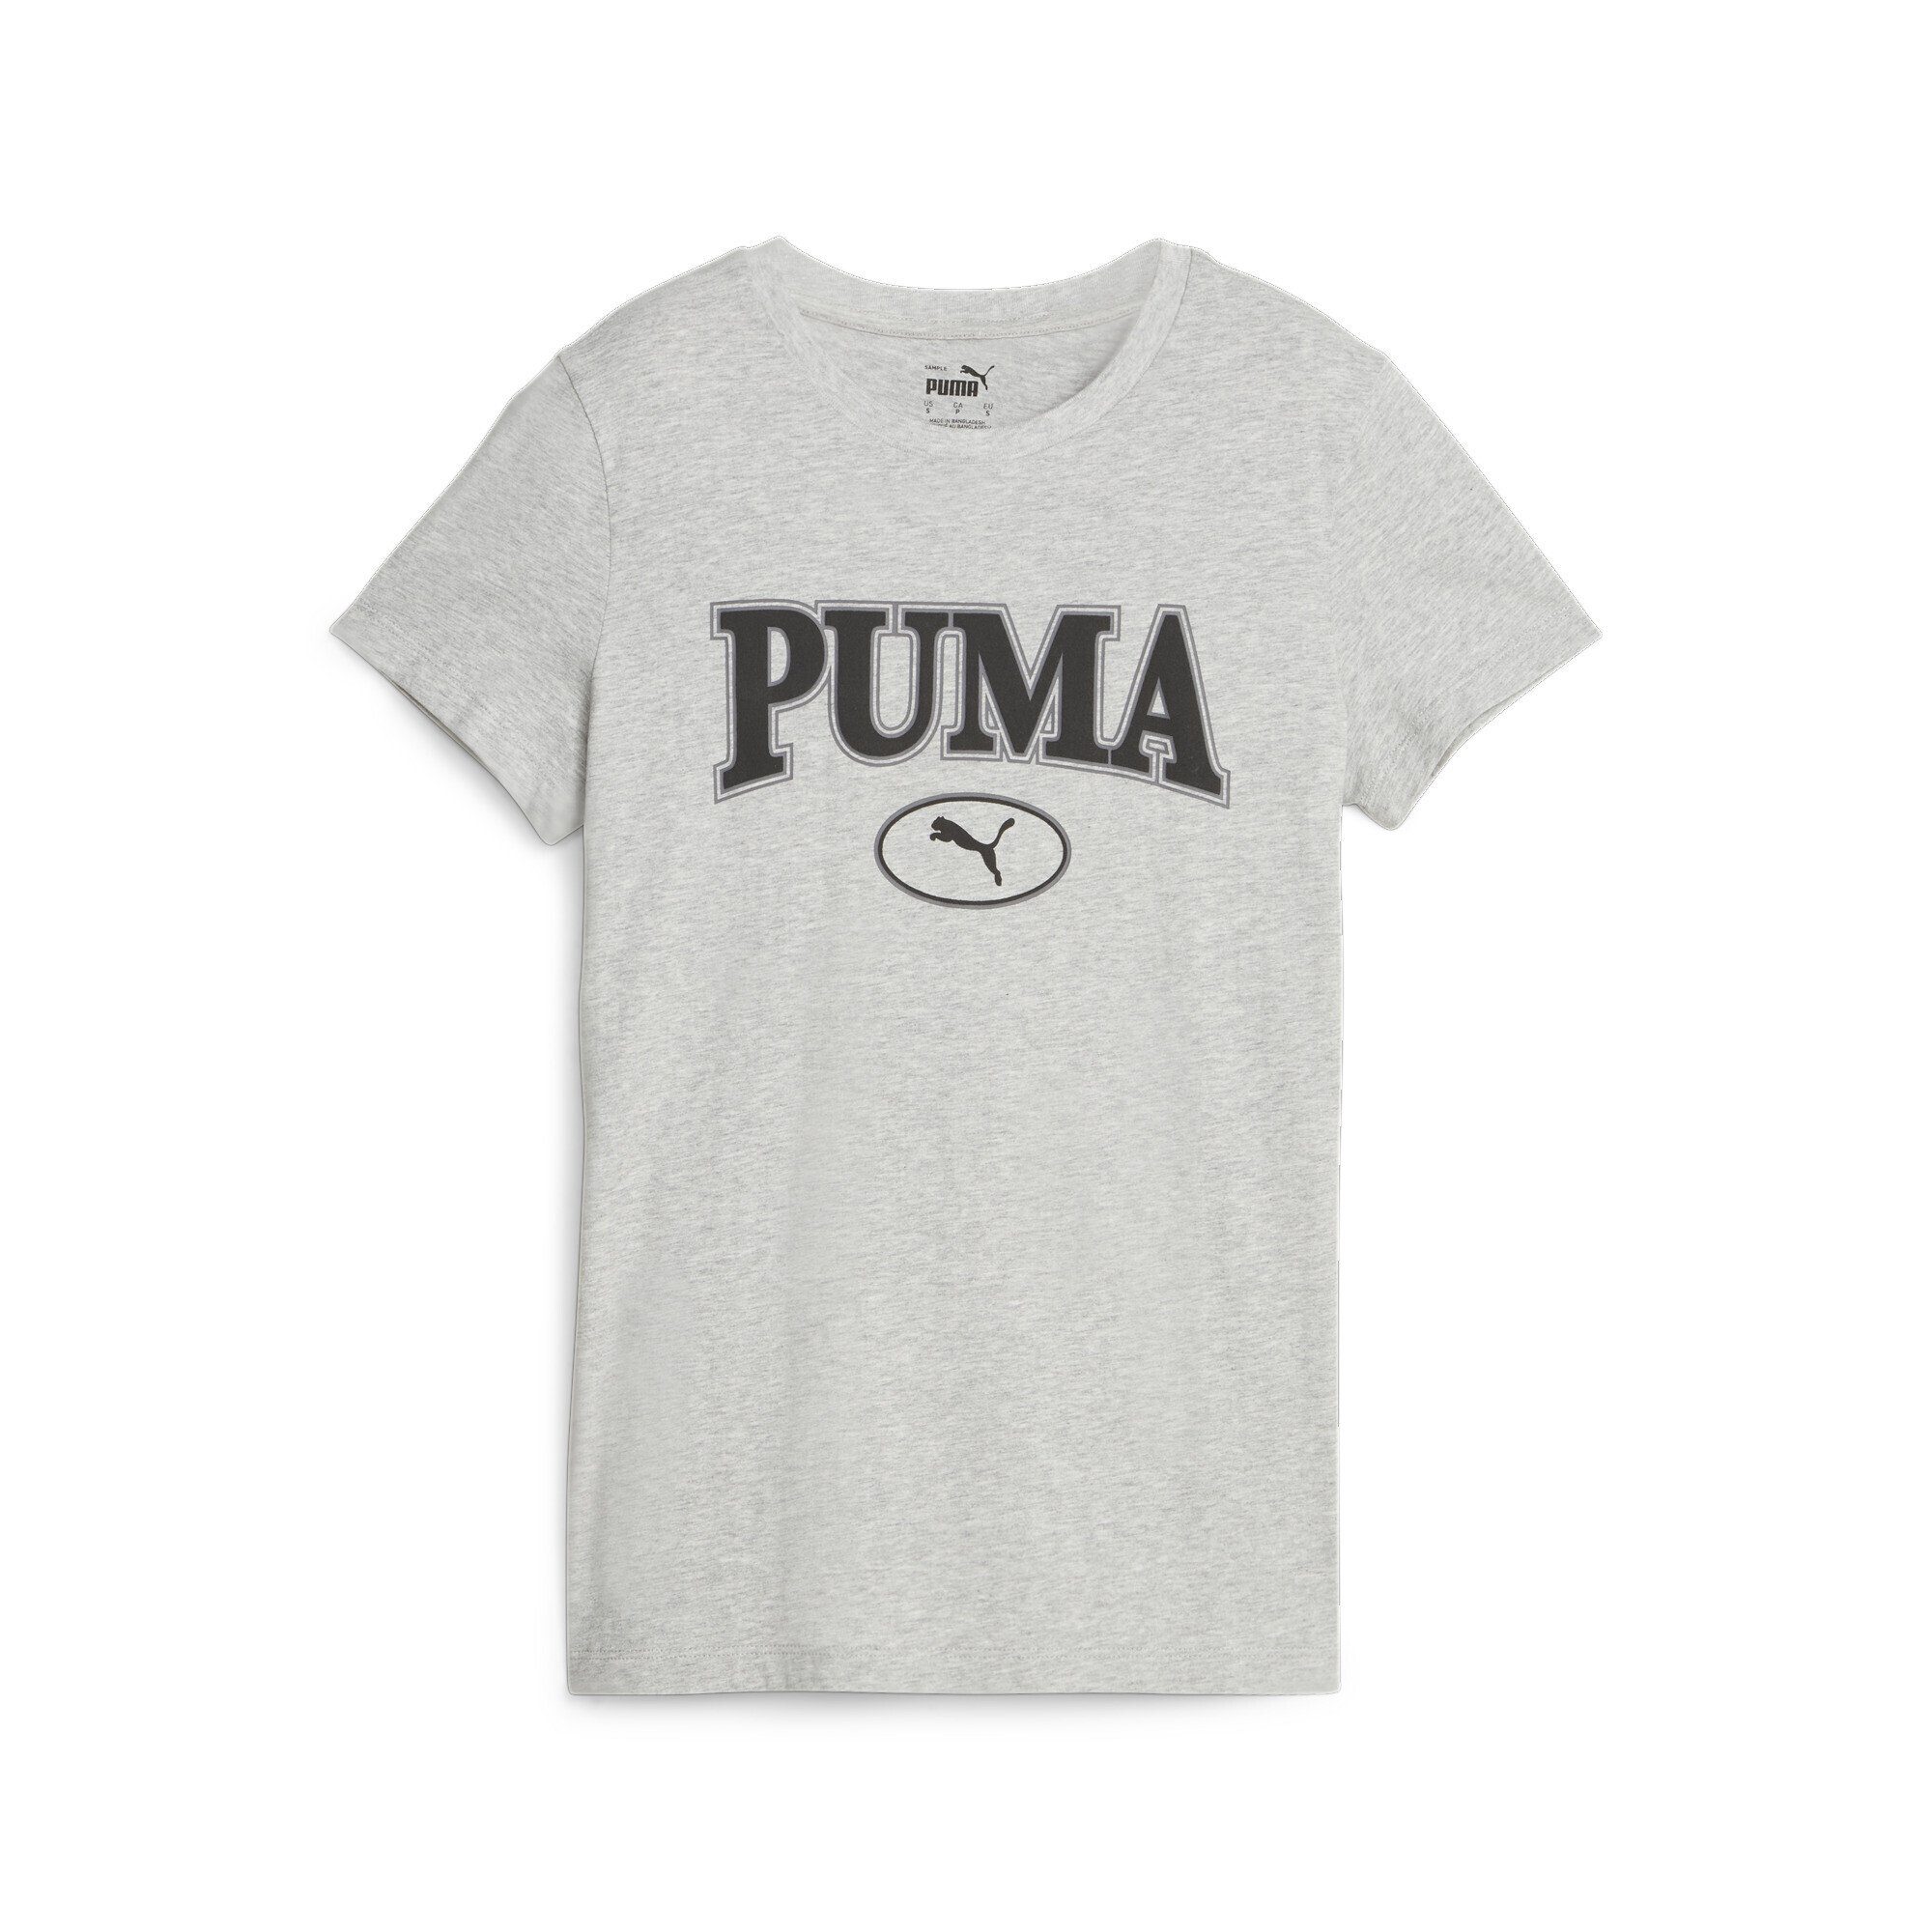 Brust Damen, Gummierter PUMA SQUAD und PUMA Veloursleder-Print Graphic auf T-Shirt Grafik- der T-Shirt